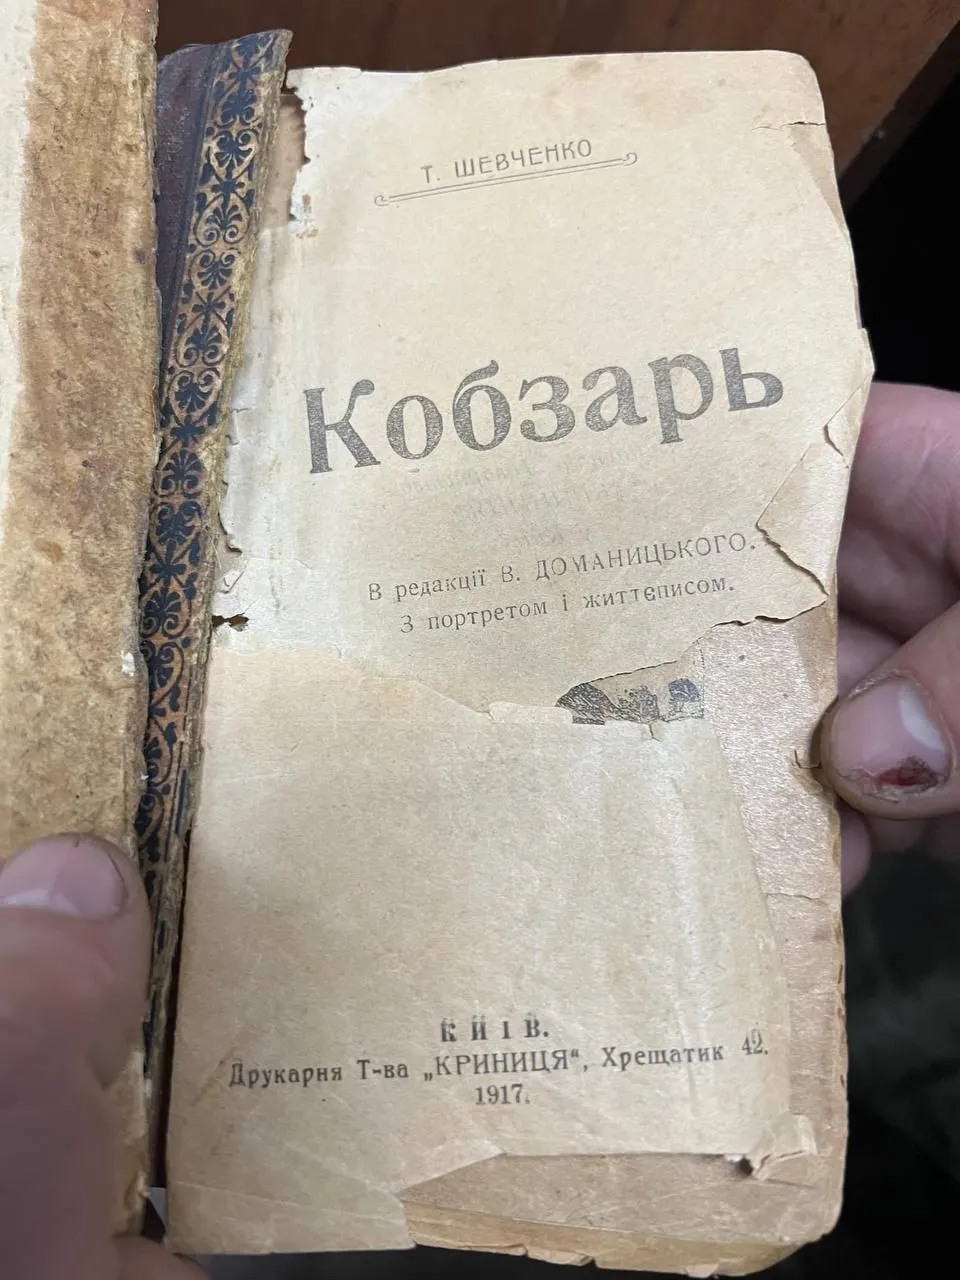 Книгу издали в 1917 году